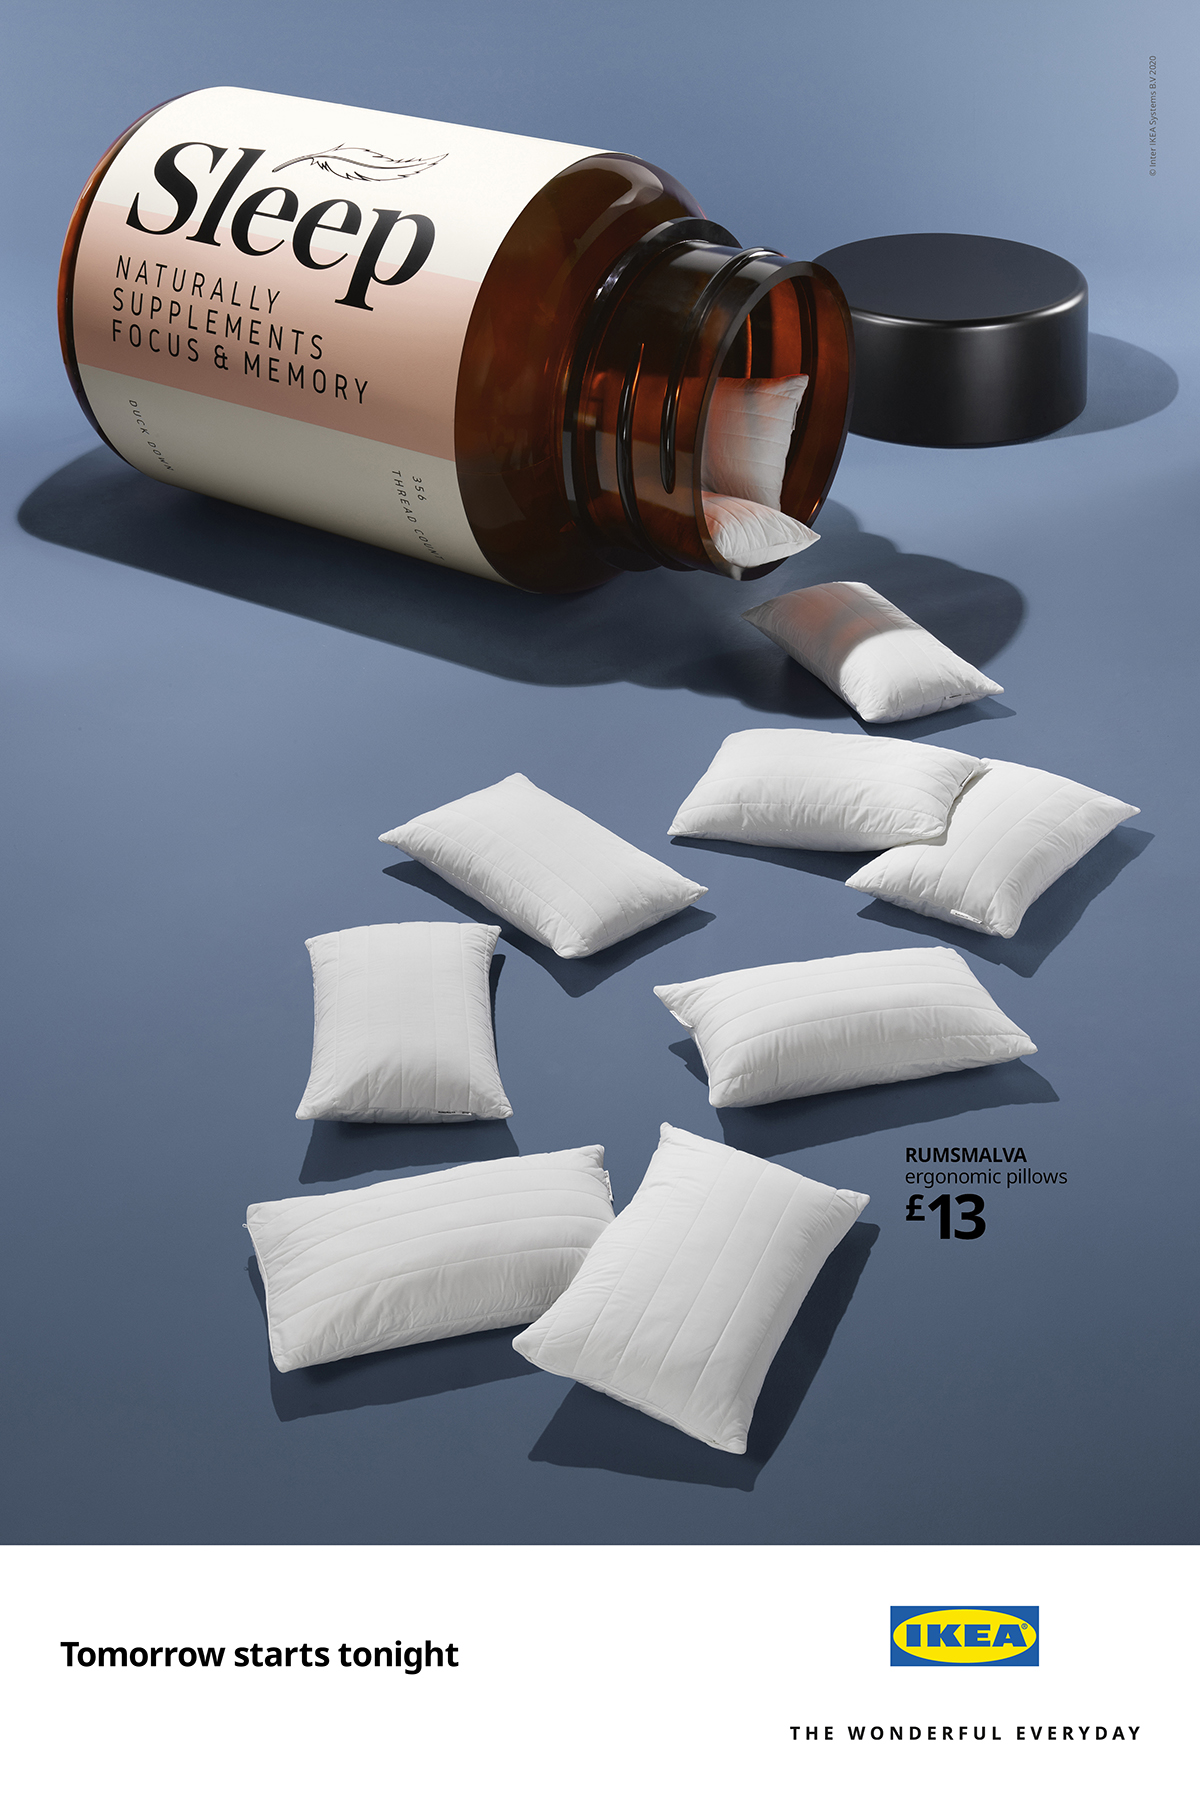 ikea-uk-mother-london-sleep-bed-hare-tortoise-print-ad-vitamin-supplements-pills-pillows